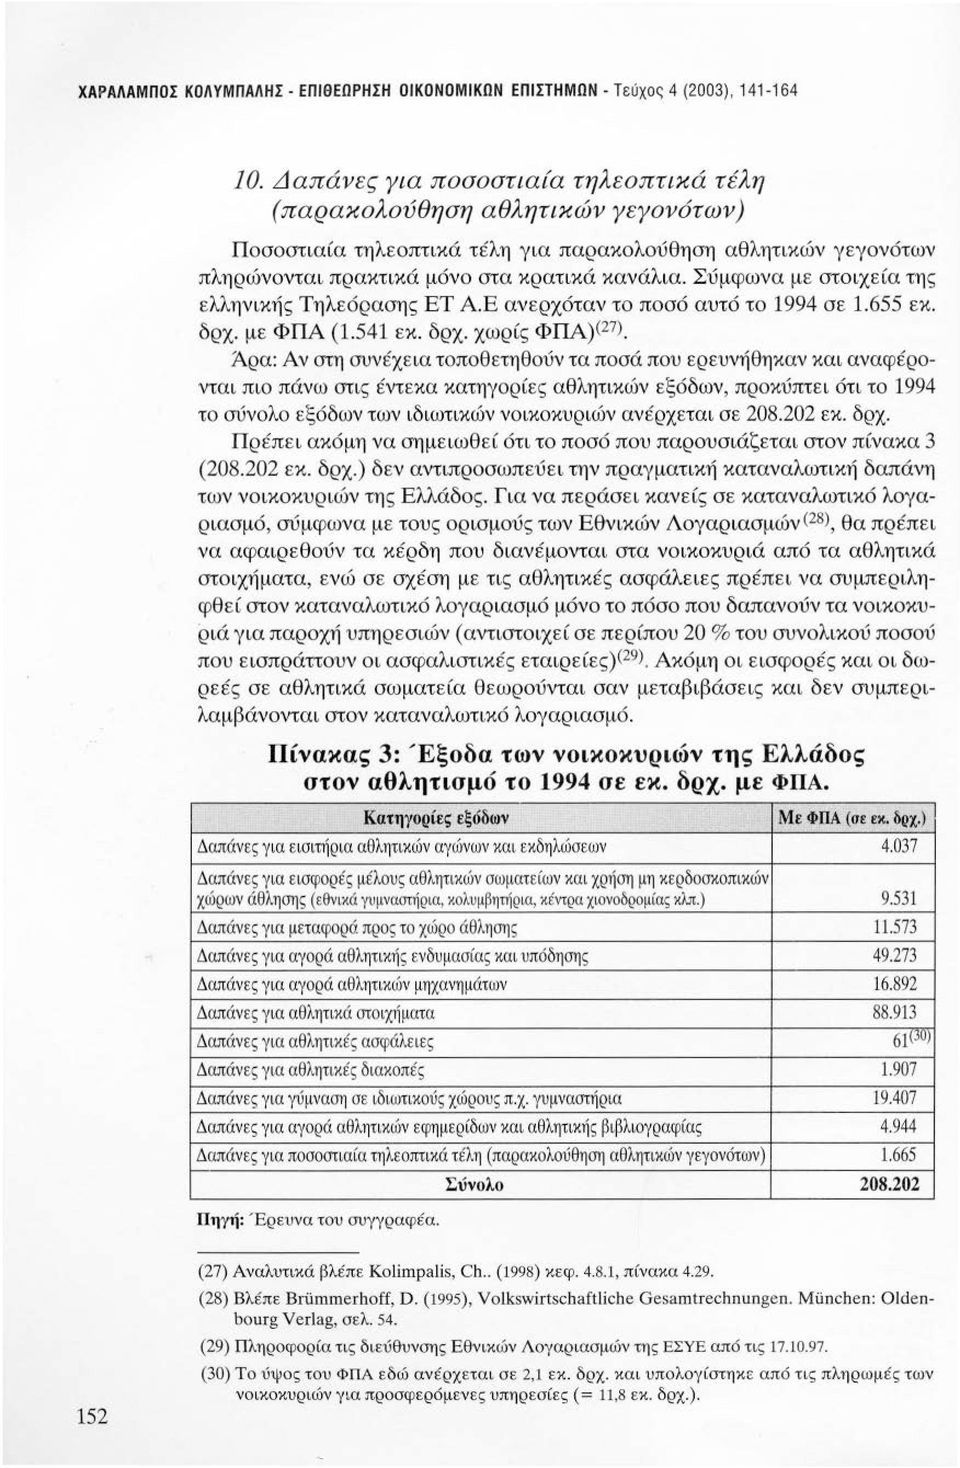 Σύμφων α με στοιχεία της ελληνικής Τηλεό ρασης ΕΤ ΑΕ ανερχόταν το ποσό αυτό το 1994 σε 1.655 εκ. δρχ. με ΦΠΑ (1.541 εκ. δρχ. χωρίς ΦΠΑ)(27).